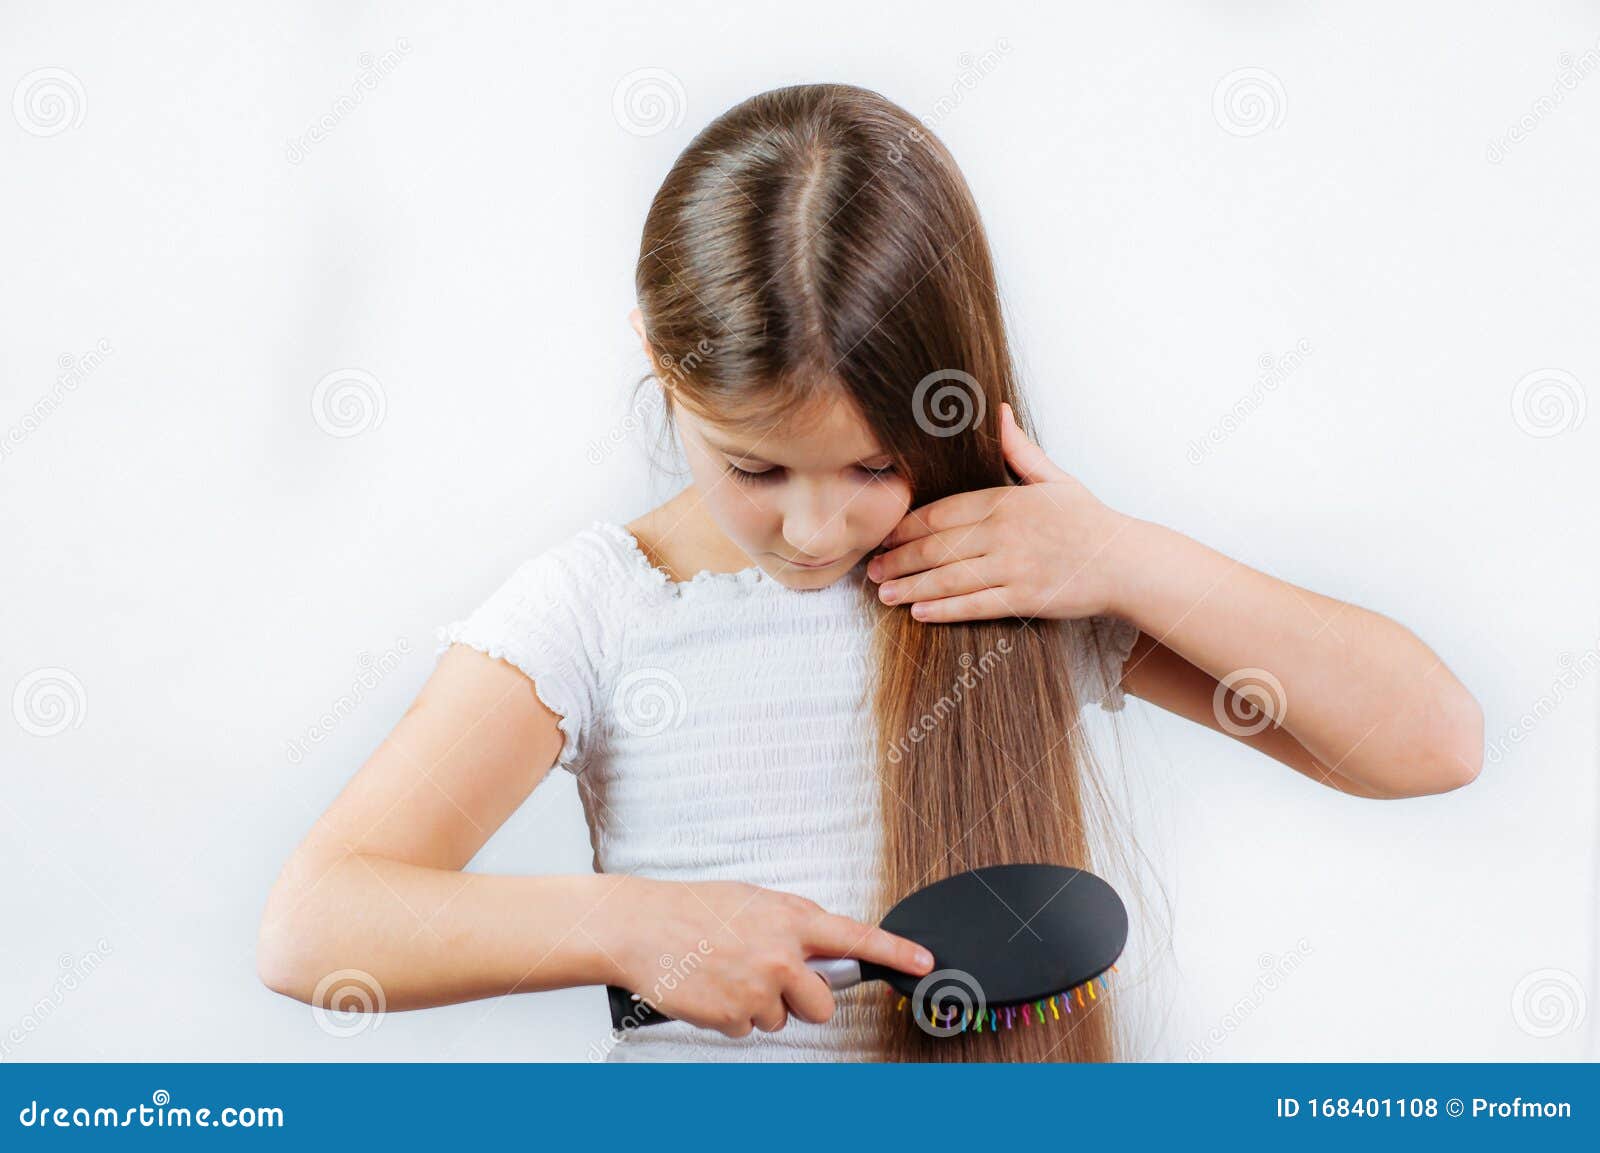 梳女孩头发 库存图片. 图片 包括有 微笑, 关心, 女孩, 人员, 白种人, 空白, 梳子, 纵向, 发型 - 22028095